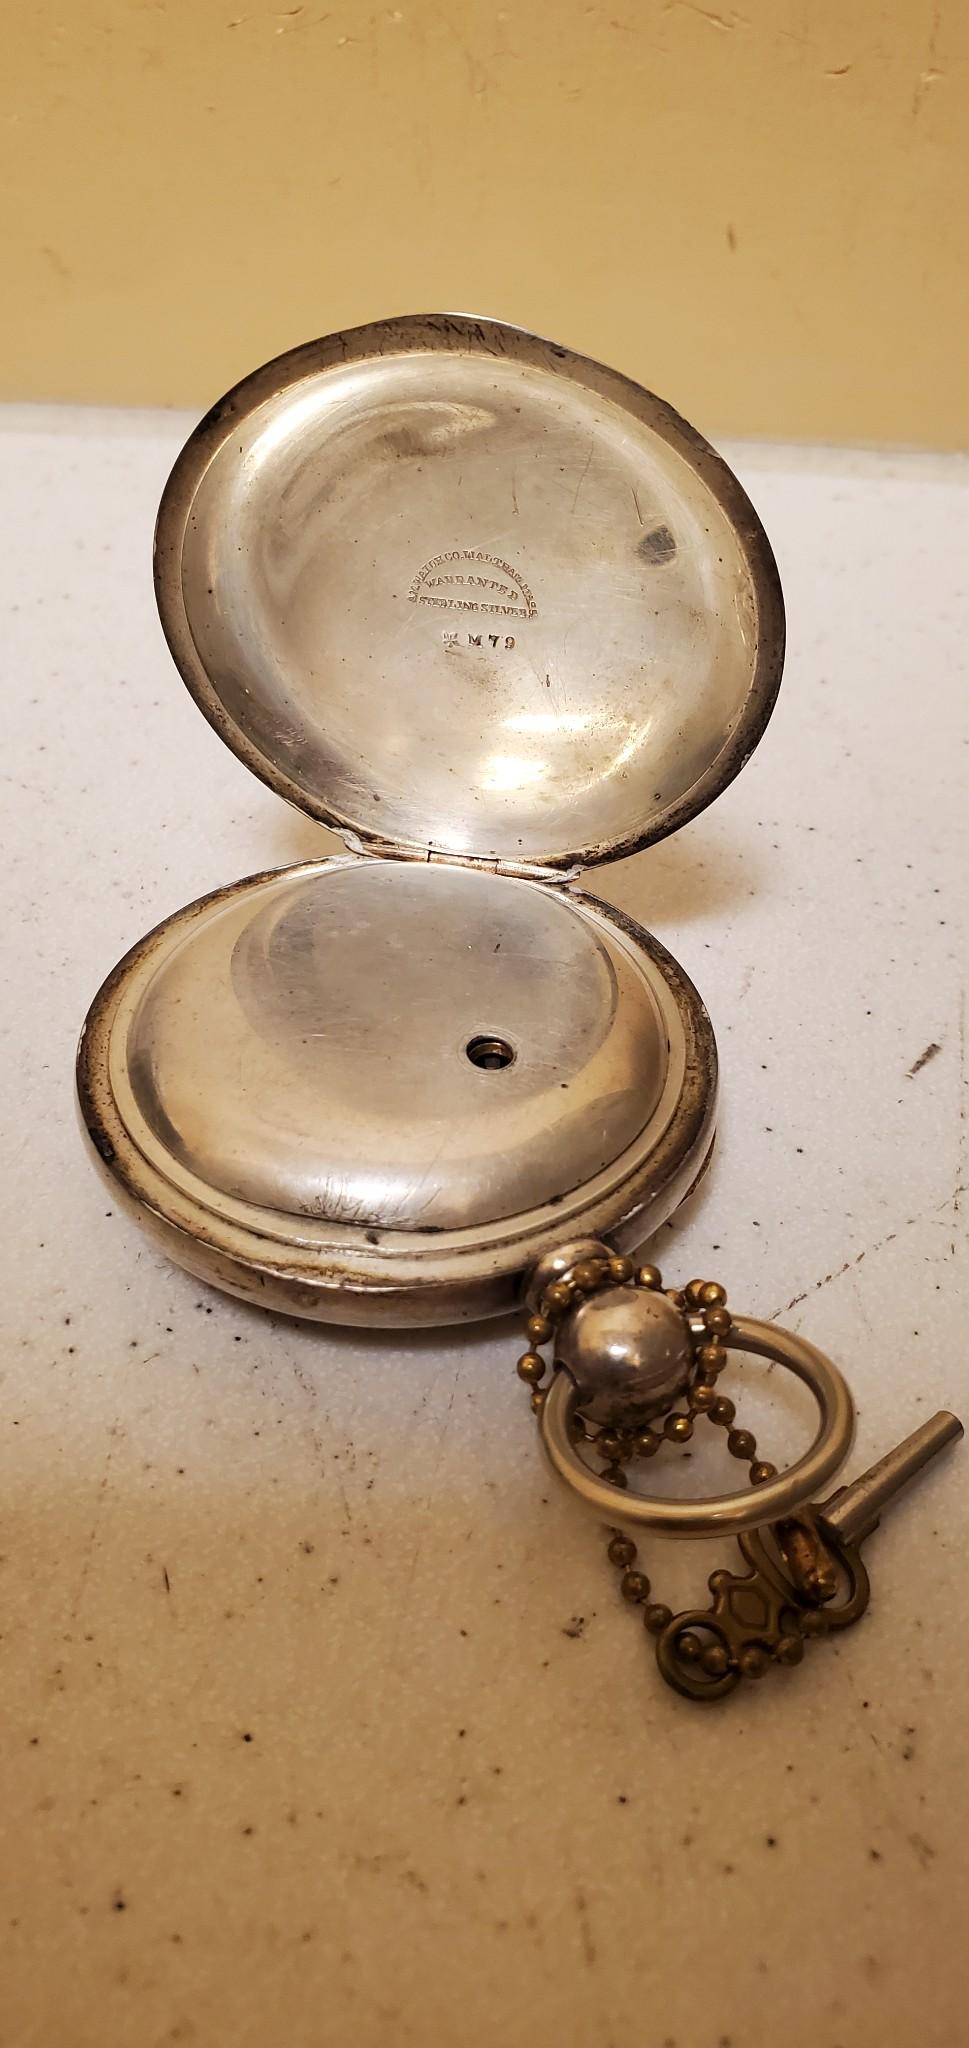 Women's or Men's Illinois Watch Co. Pocket Watch Key Wind Working Sterling Silver 1886 Year